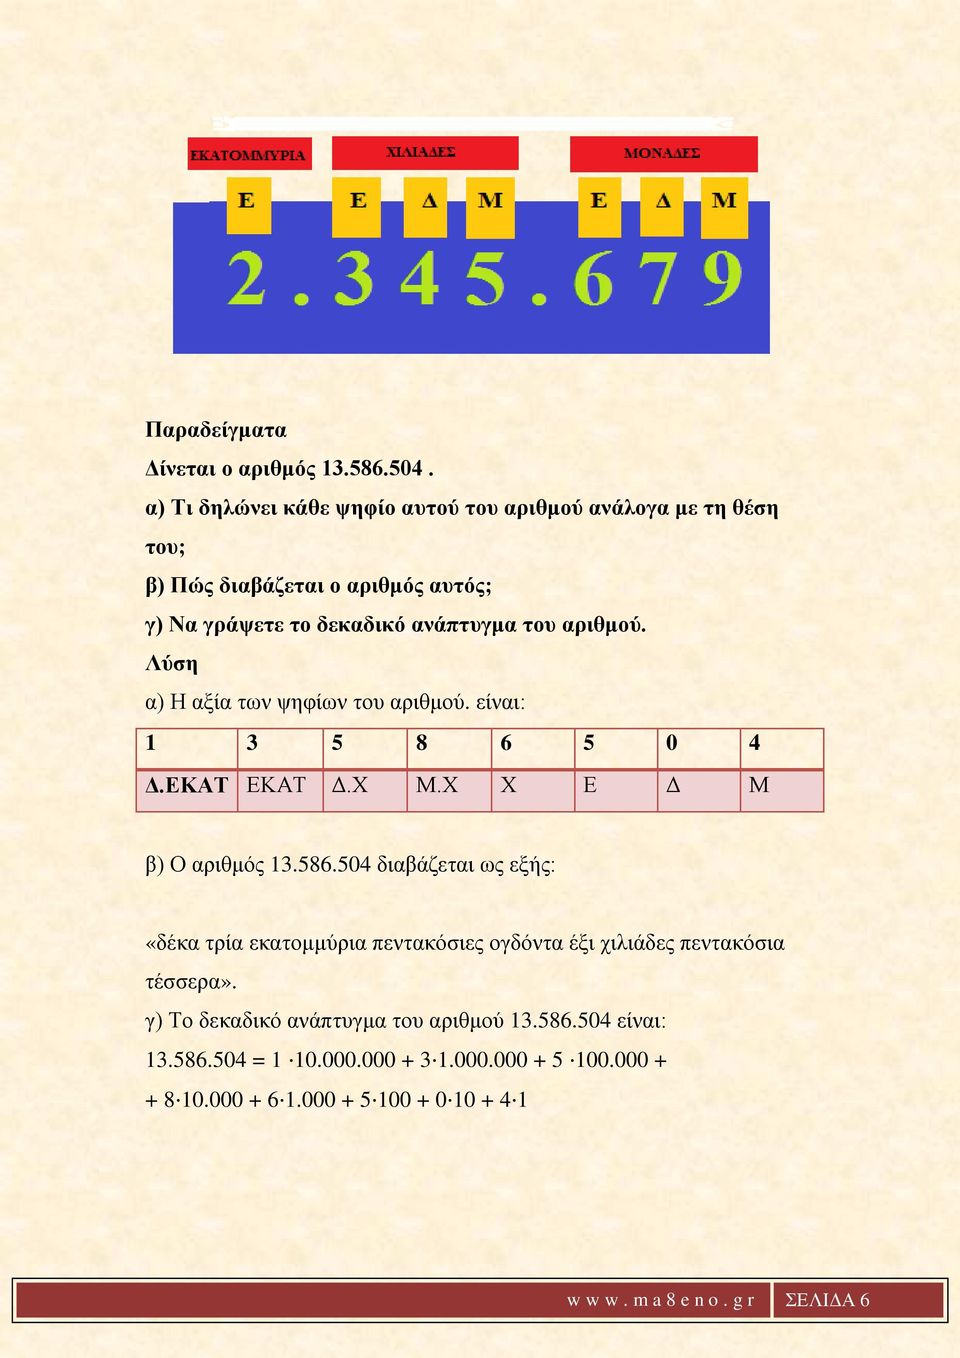 αριθμού. Λύση α) Η αξία των ψηφίων του αριθμού. είναι: 1 3 5 8 6 5 0 4 Δ.ΕΚΑΤ ΕΚΑΤ Δ.Χ Μ.Χ Χ Ε Δ Μ β) Ο αριθμός 13.586.